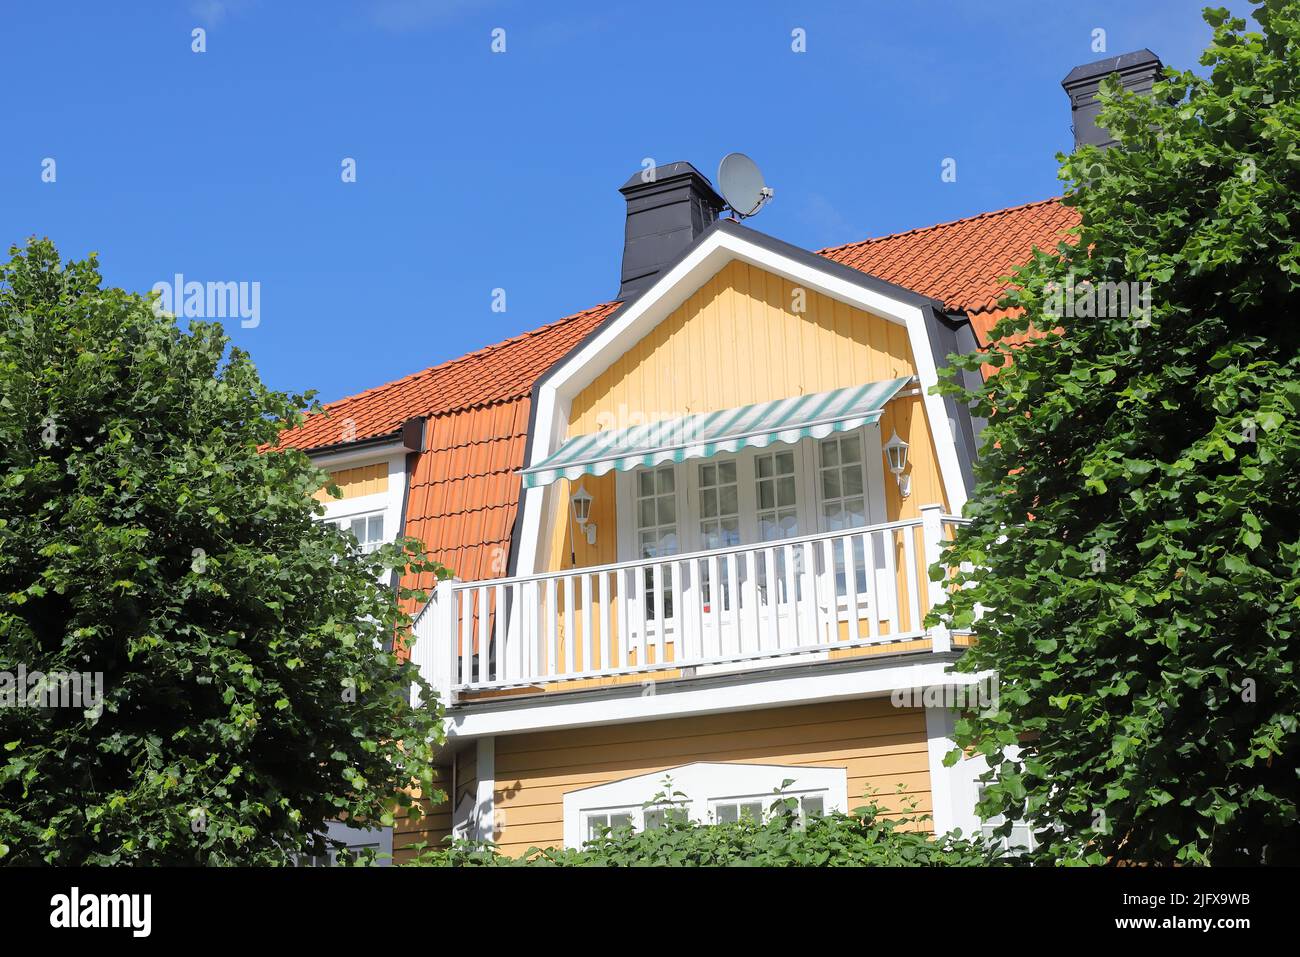 Casa unifamiliar separada de dos pisos de madera amarilla detrás del jardín verde. Foto de stock